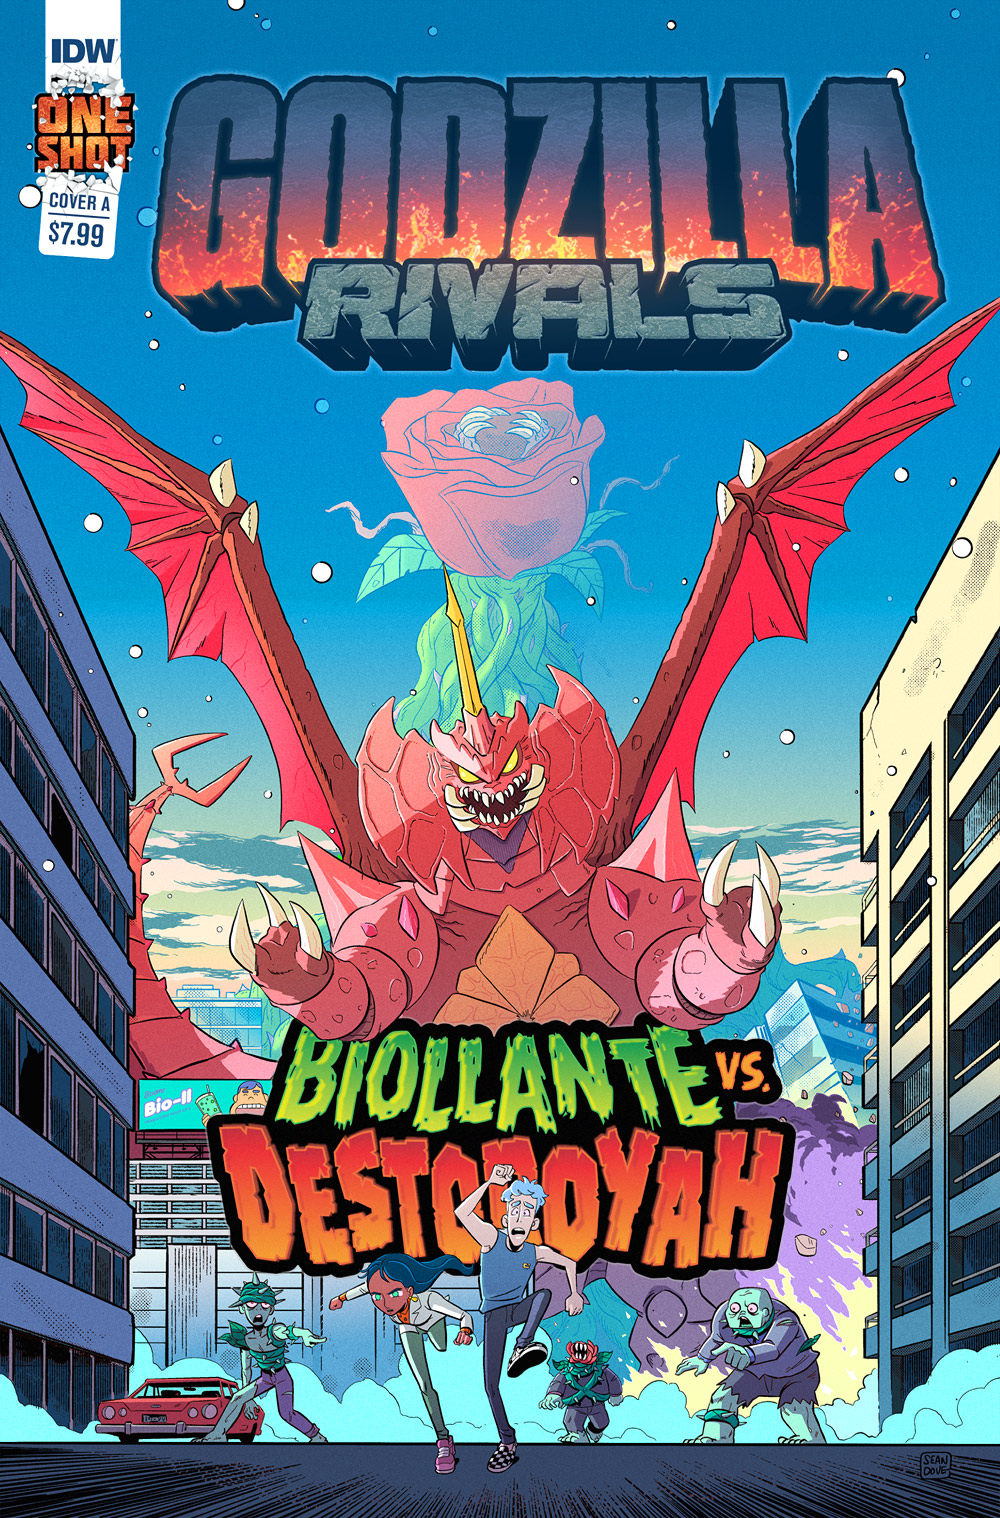 Godzilla Rivals: Biollante Vs. Destoroyah cover A by Sean Dove